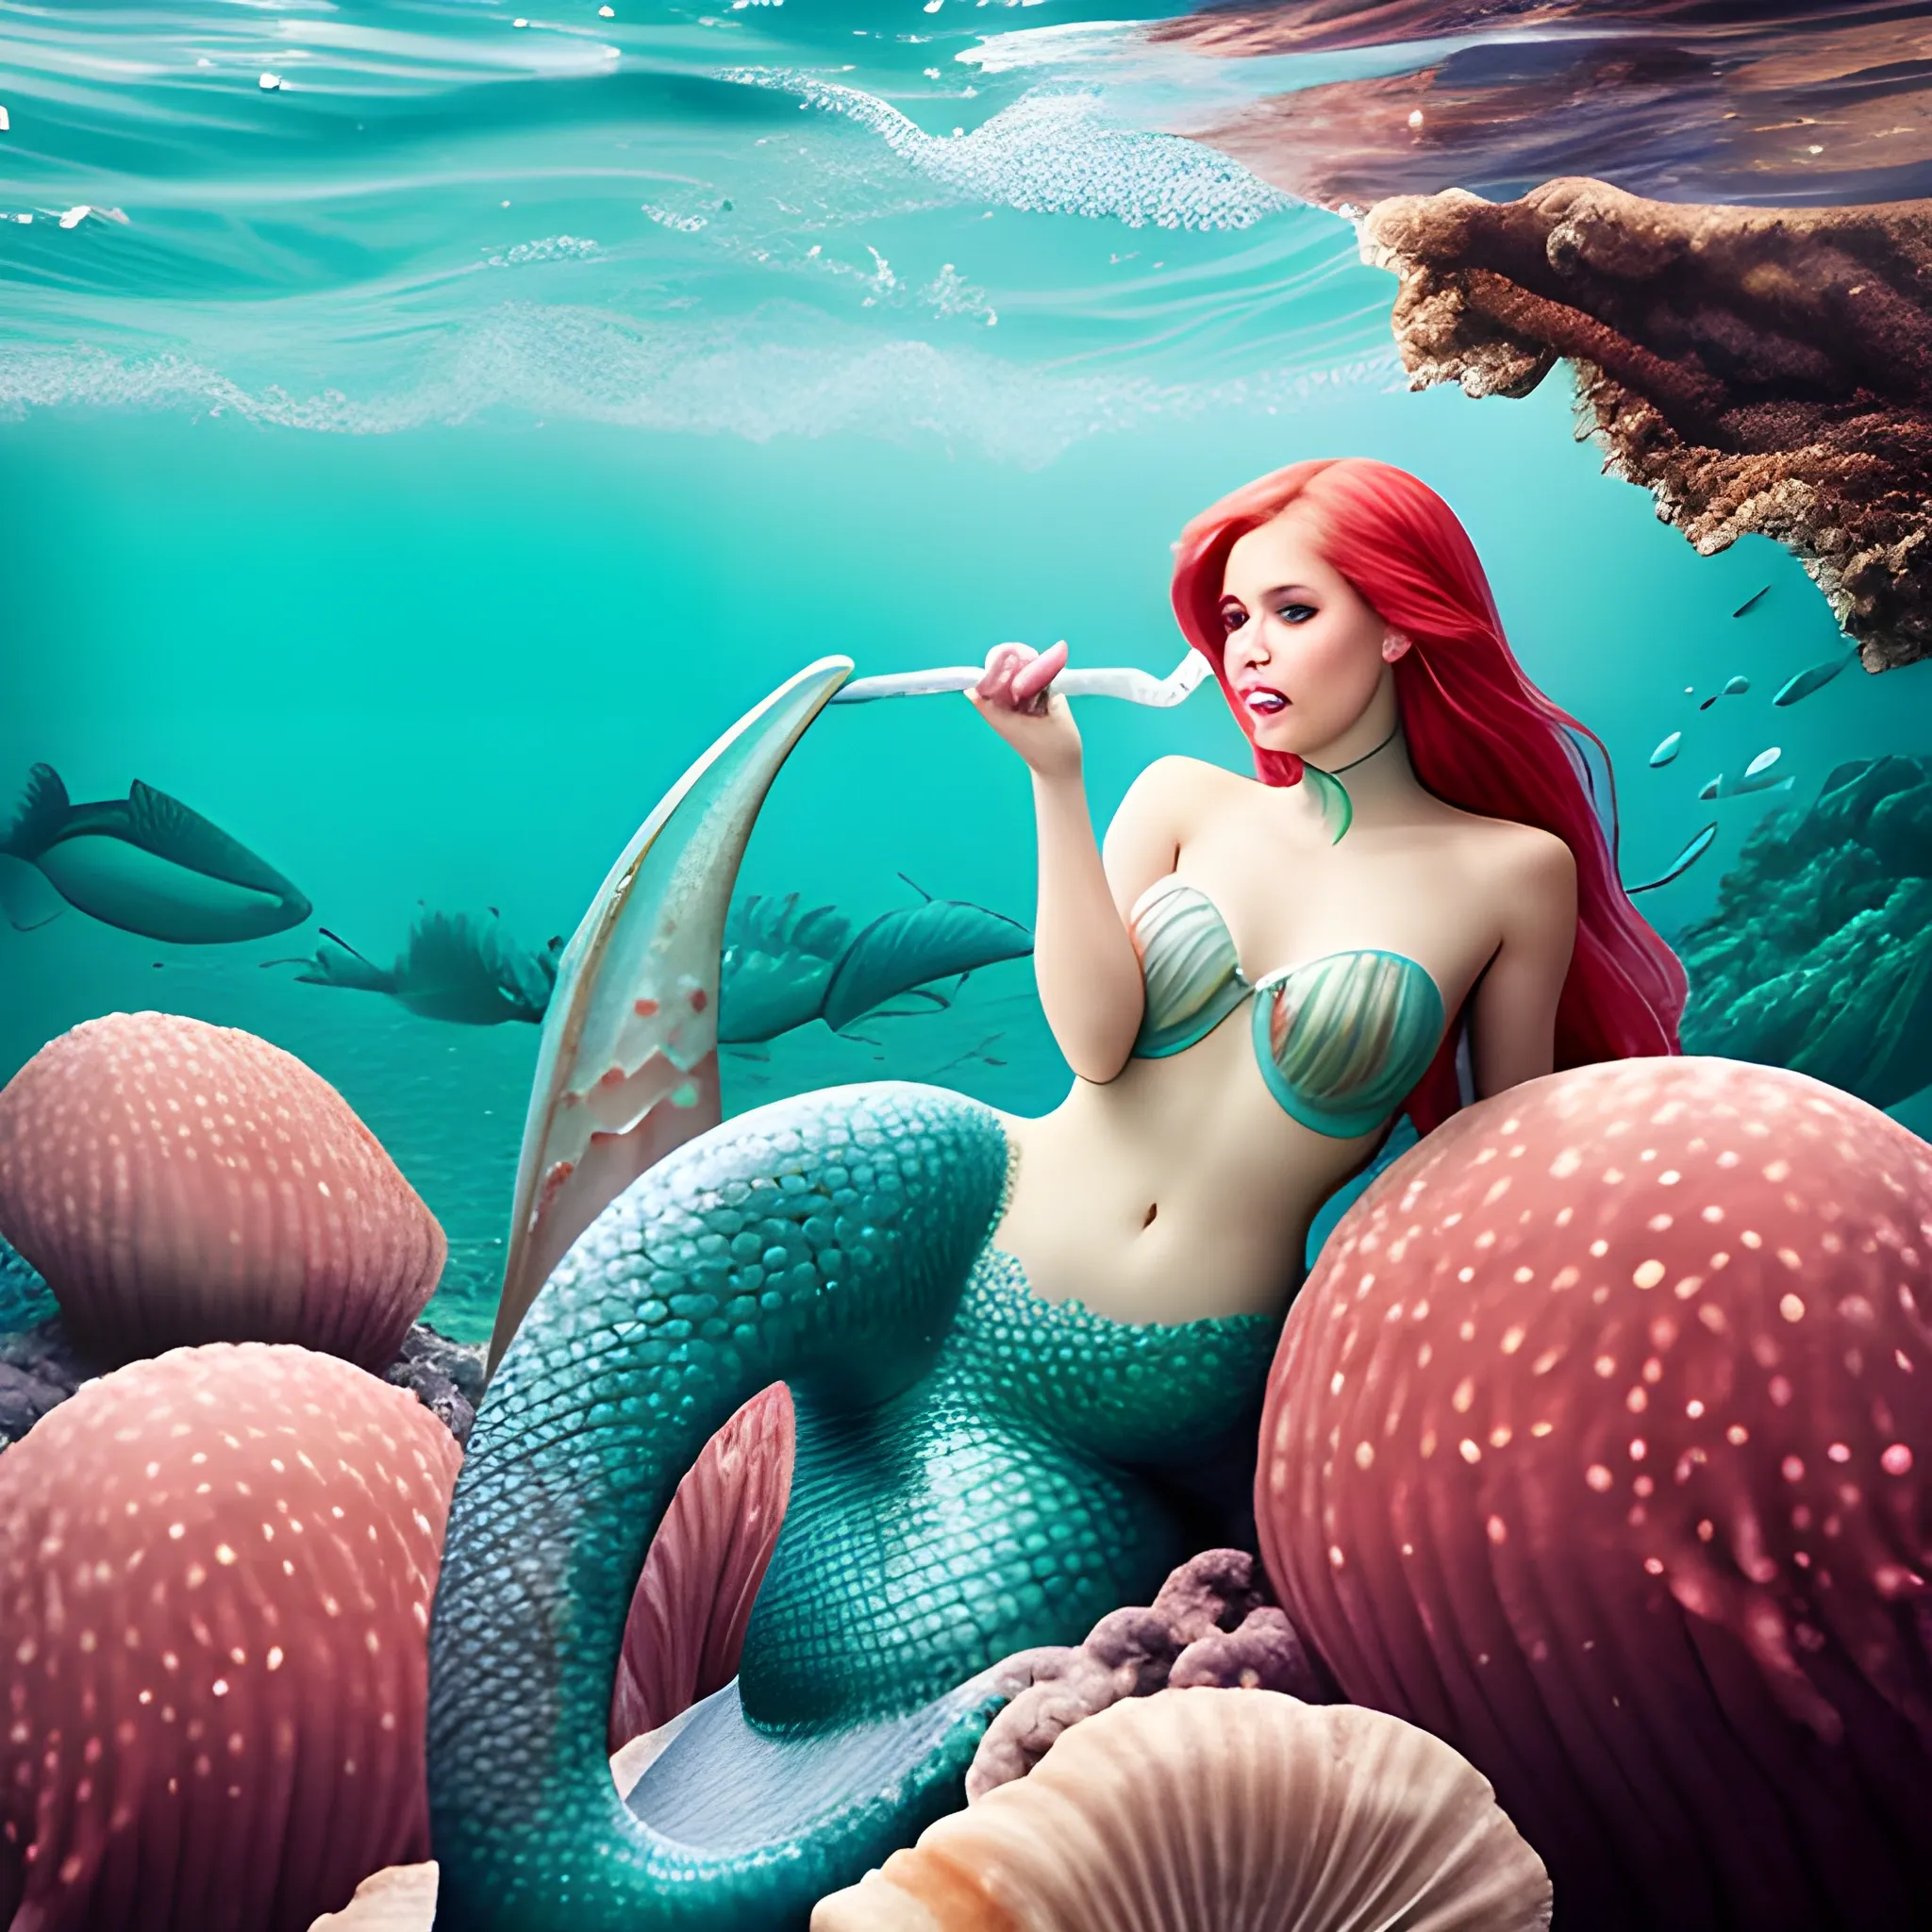 Beautiful mermaid eating sea cucumber photograph